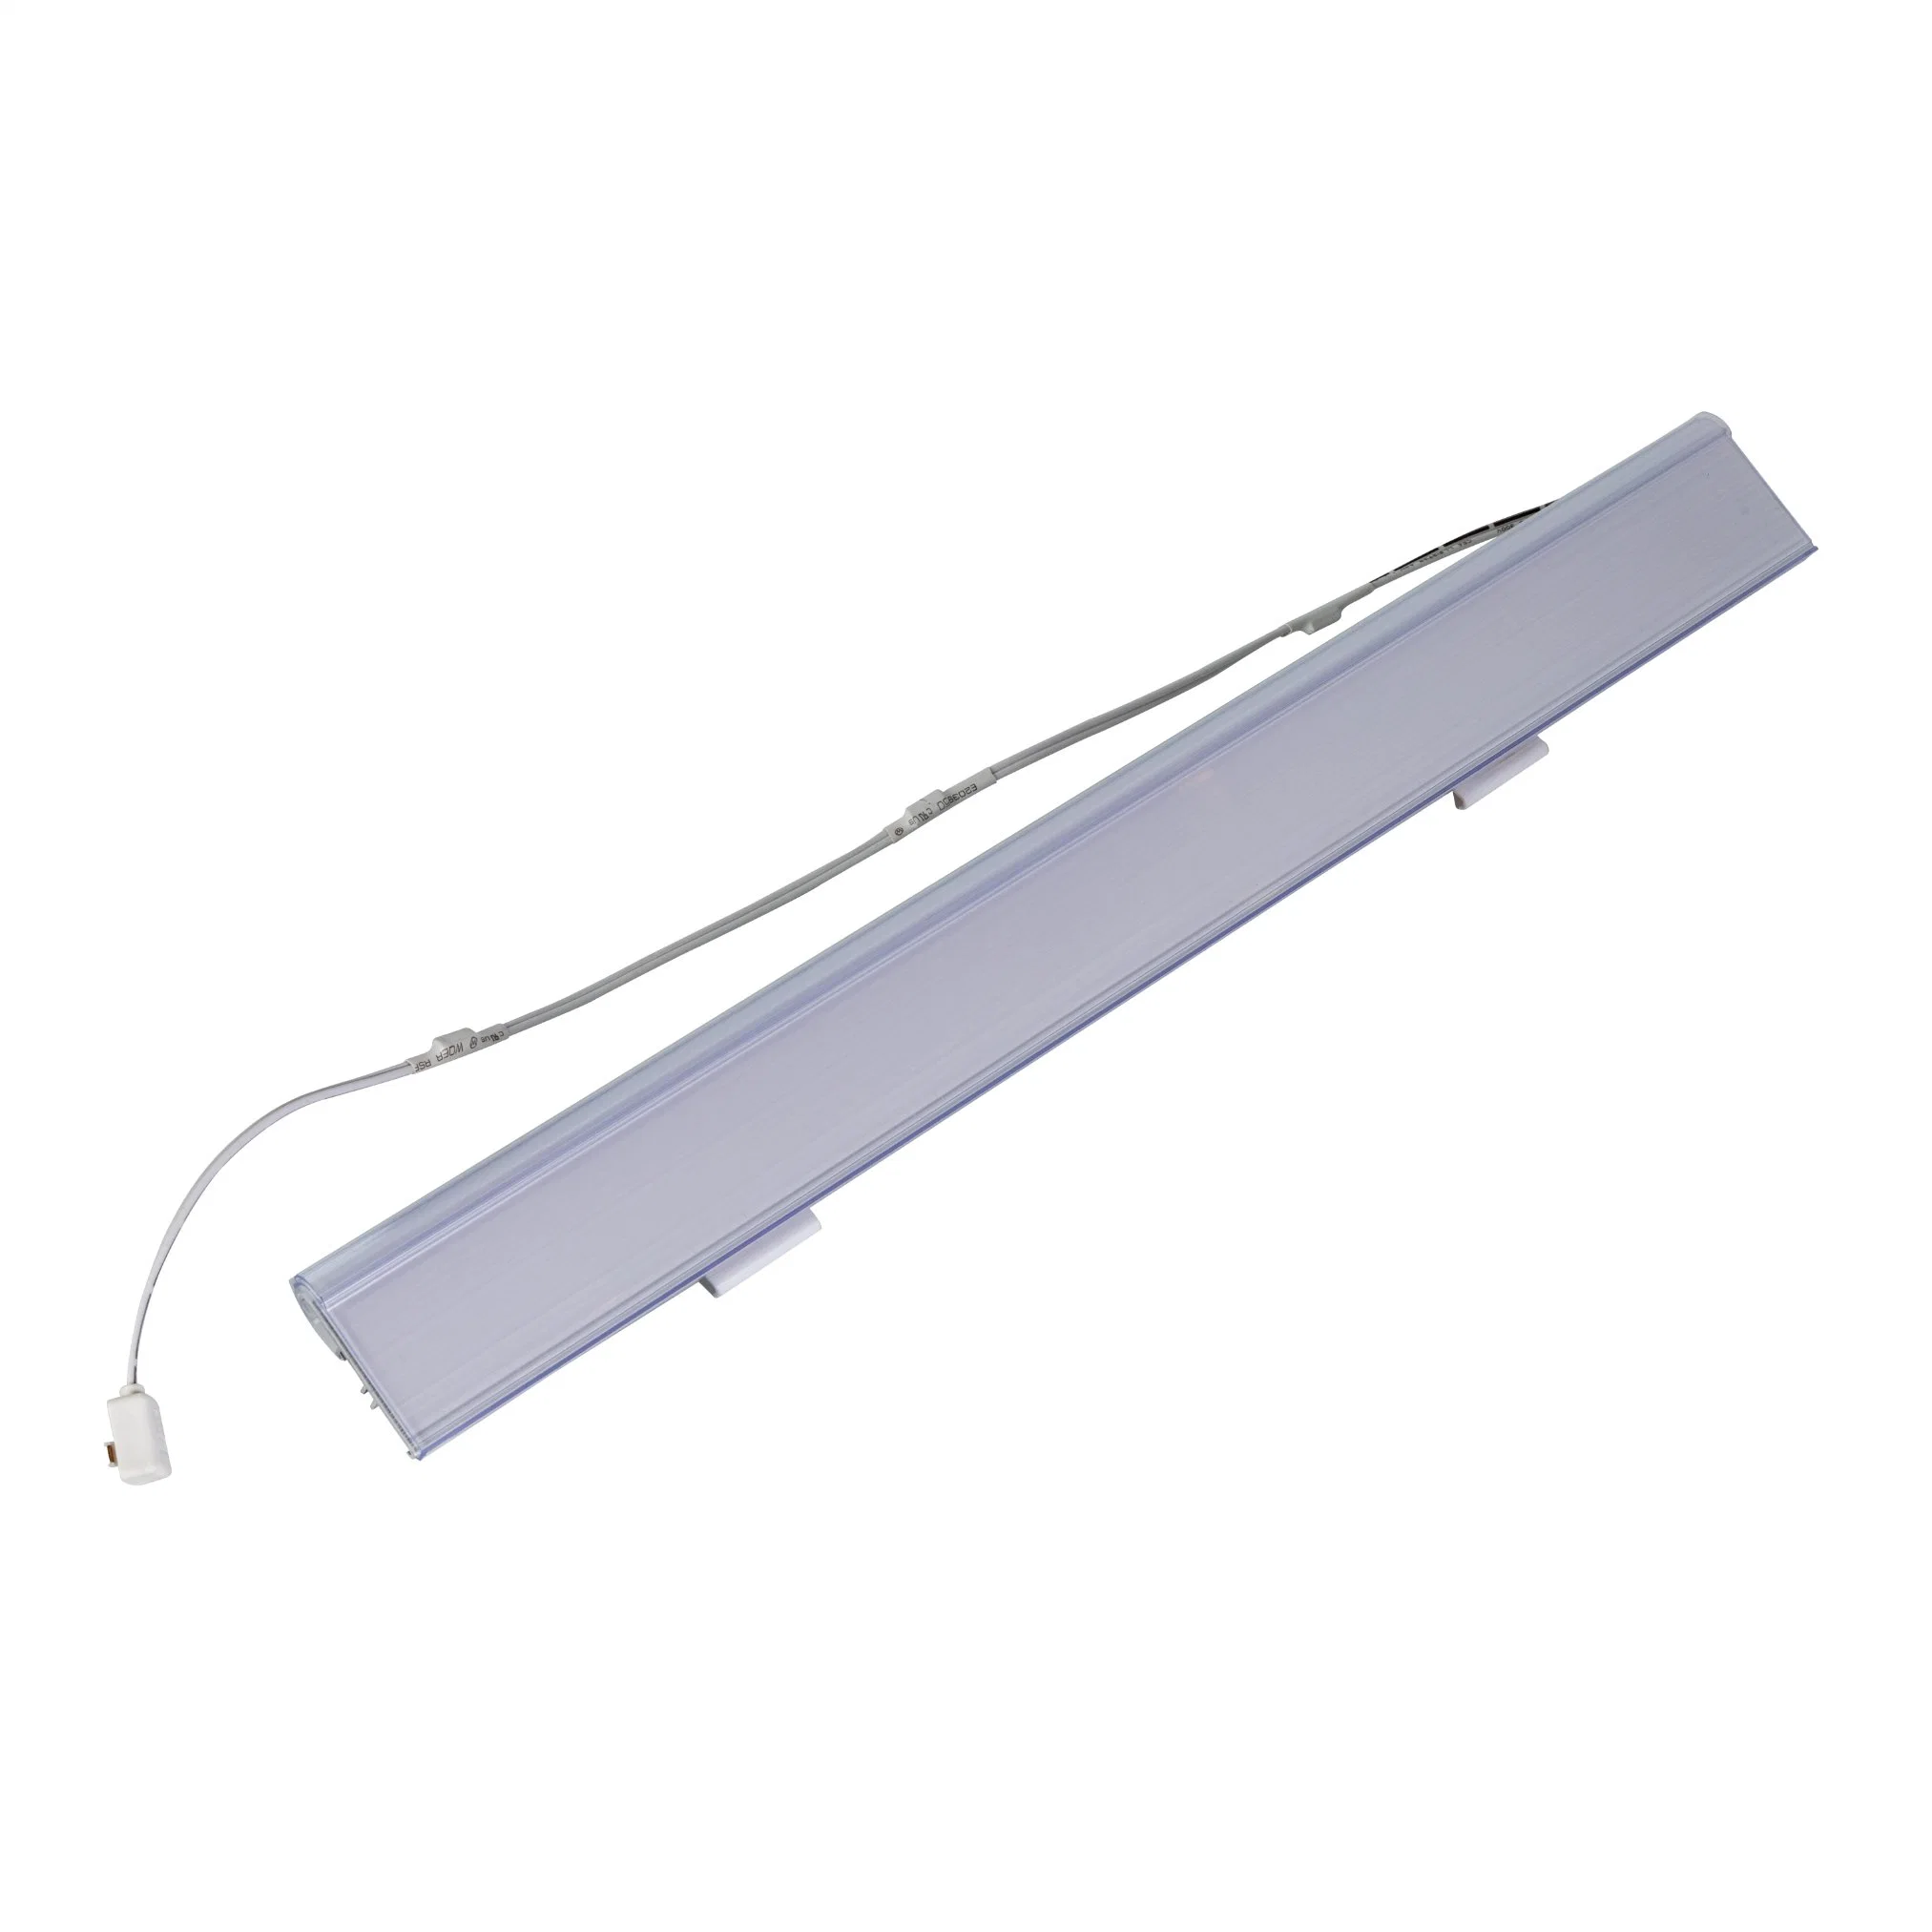 Luz LED de etiqueta con perfil de aluminio para iluminación de estantes